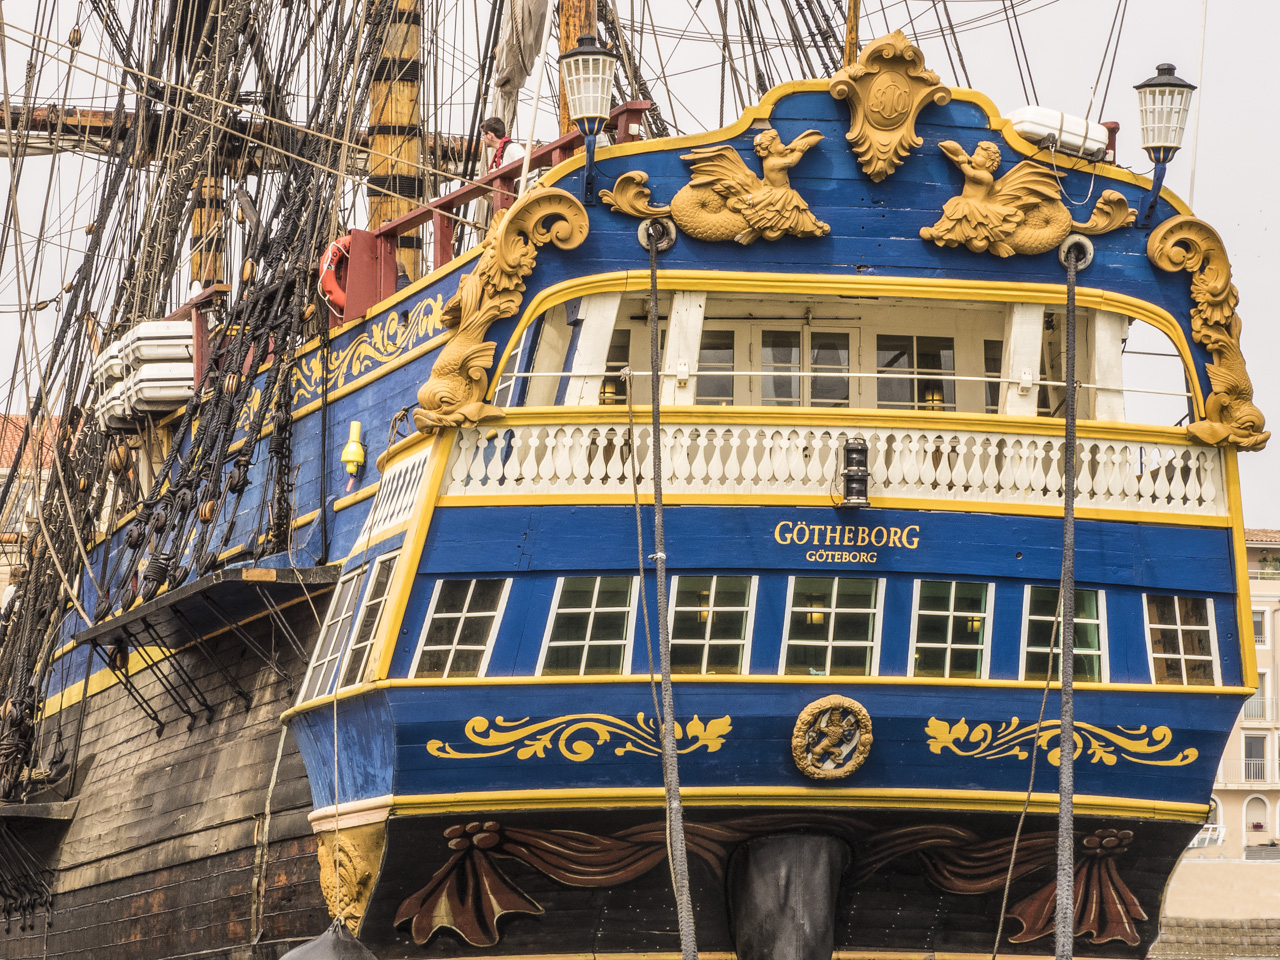 Arrivée du plus grand bateau en bois dans le port de Sète, le Gotheborg, bateau Suedois Le Götheborg III (2003) est un trois-mâts carré suédois de 47 m de long, construit entre 1992 et 2005, réplique d'un indiaman du xviiie siècle. Le navire original a été construit en 1738 aux docks Terra Nova de Stockholm pour la Compagnie suédoise des Indes orientales. Il a coulé dans le port de Göteborg le 12 septembre 1745 en revenant de Chine, après avoir heurté une falaise près de Älvsborg. Le navire transportait du thé, une grande quantité de porcelaine et six tonnes d'argent métal. Une partie de la cargaison fut récupérée en 1745 sur l'épave. L'épave a été redécouverte en 1984.